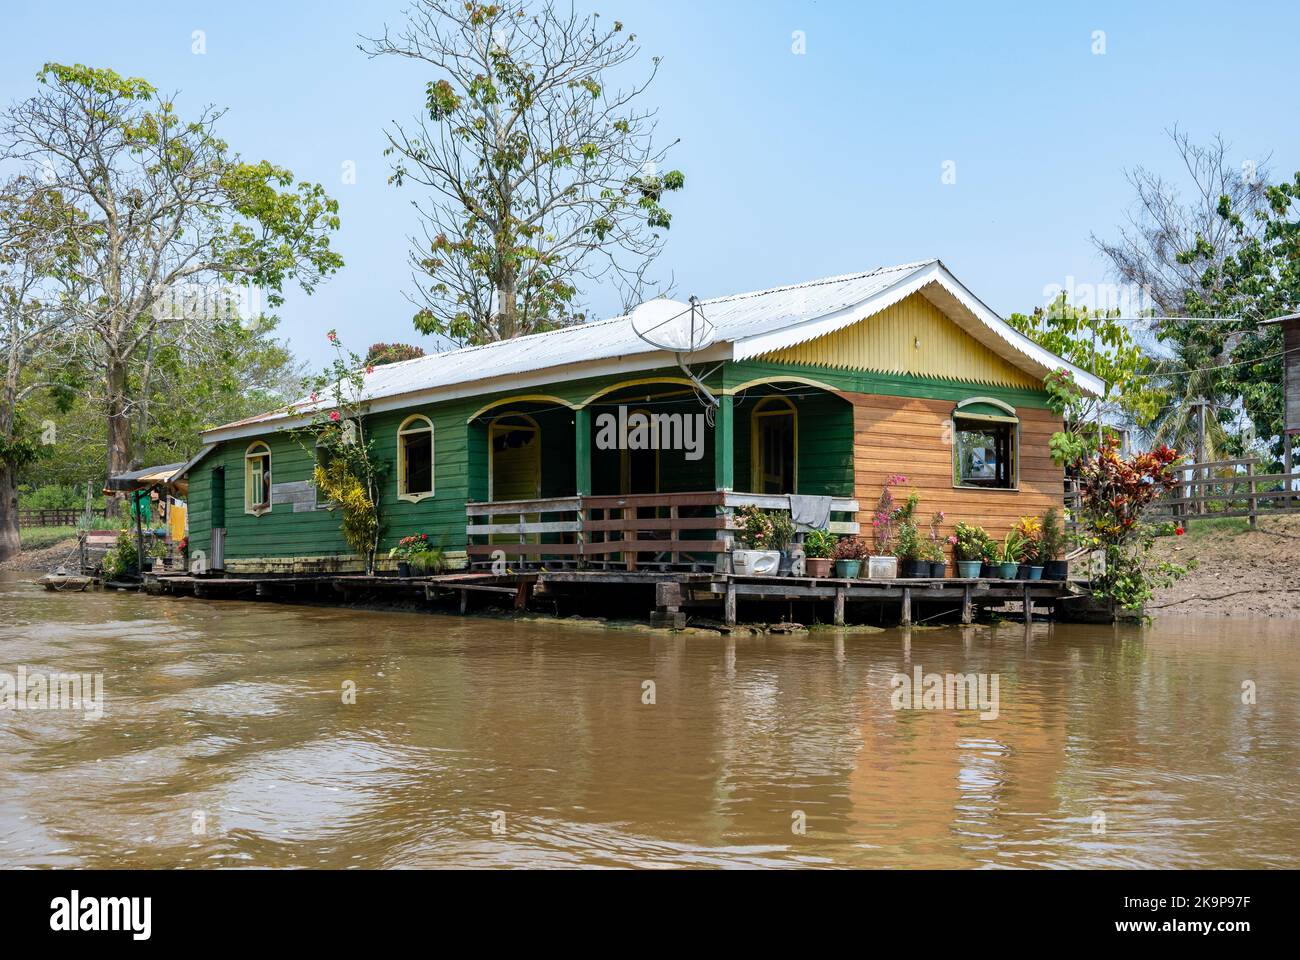 Schwimmende Häuser, die zur Bekämpfung der saisonalen Überschwemmungen entlang des Amazonas gebaut wurden. Manaus, Amazonas, Brasilien Stockfoto